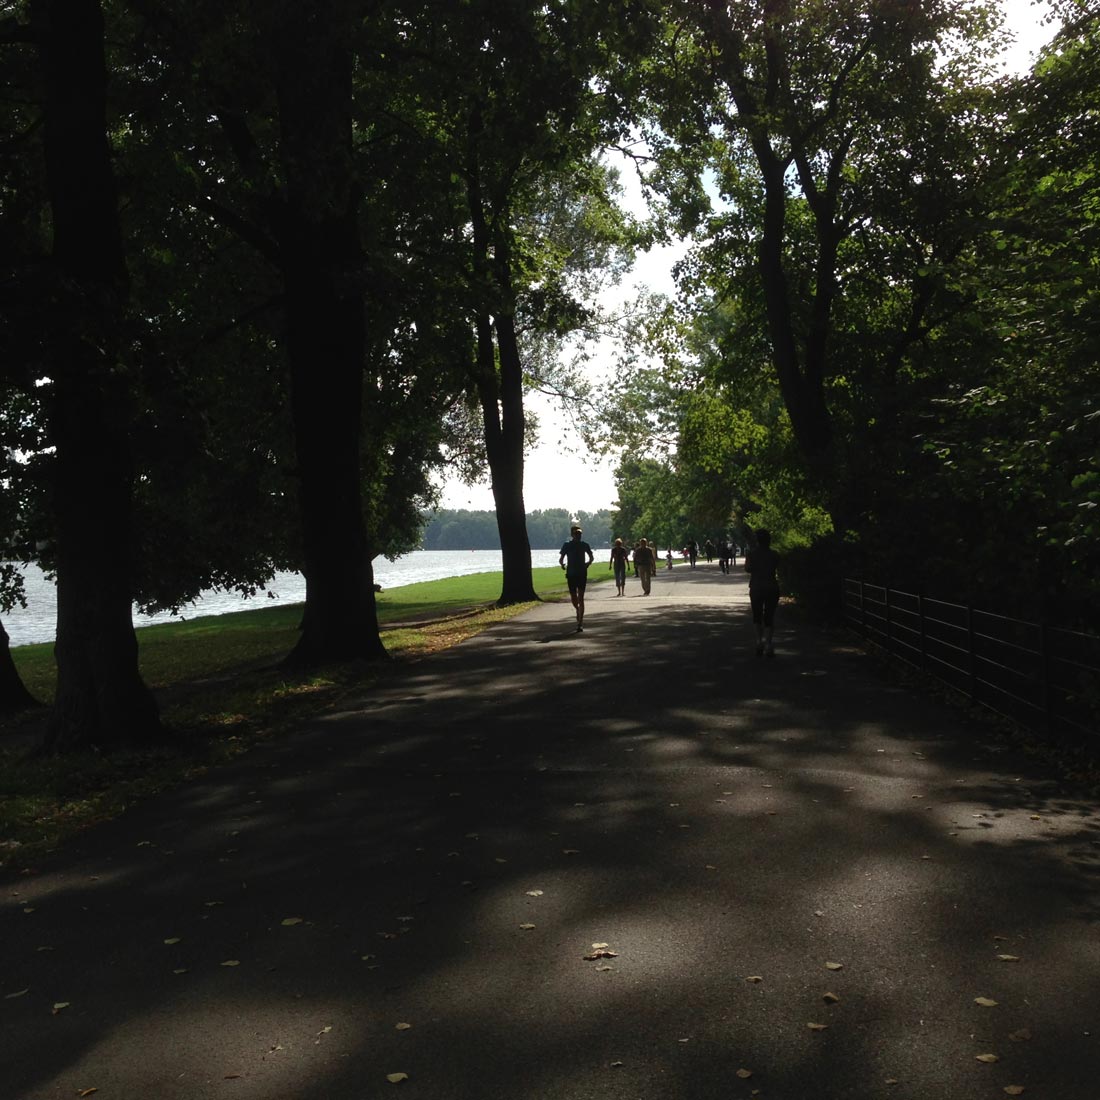 Treptower Park, sur les bords de la rivière Spree, Berlin, 09 2013. Ph. Moctar KANE.